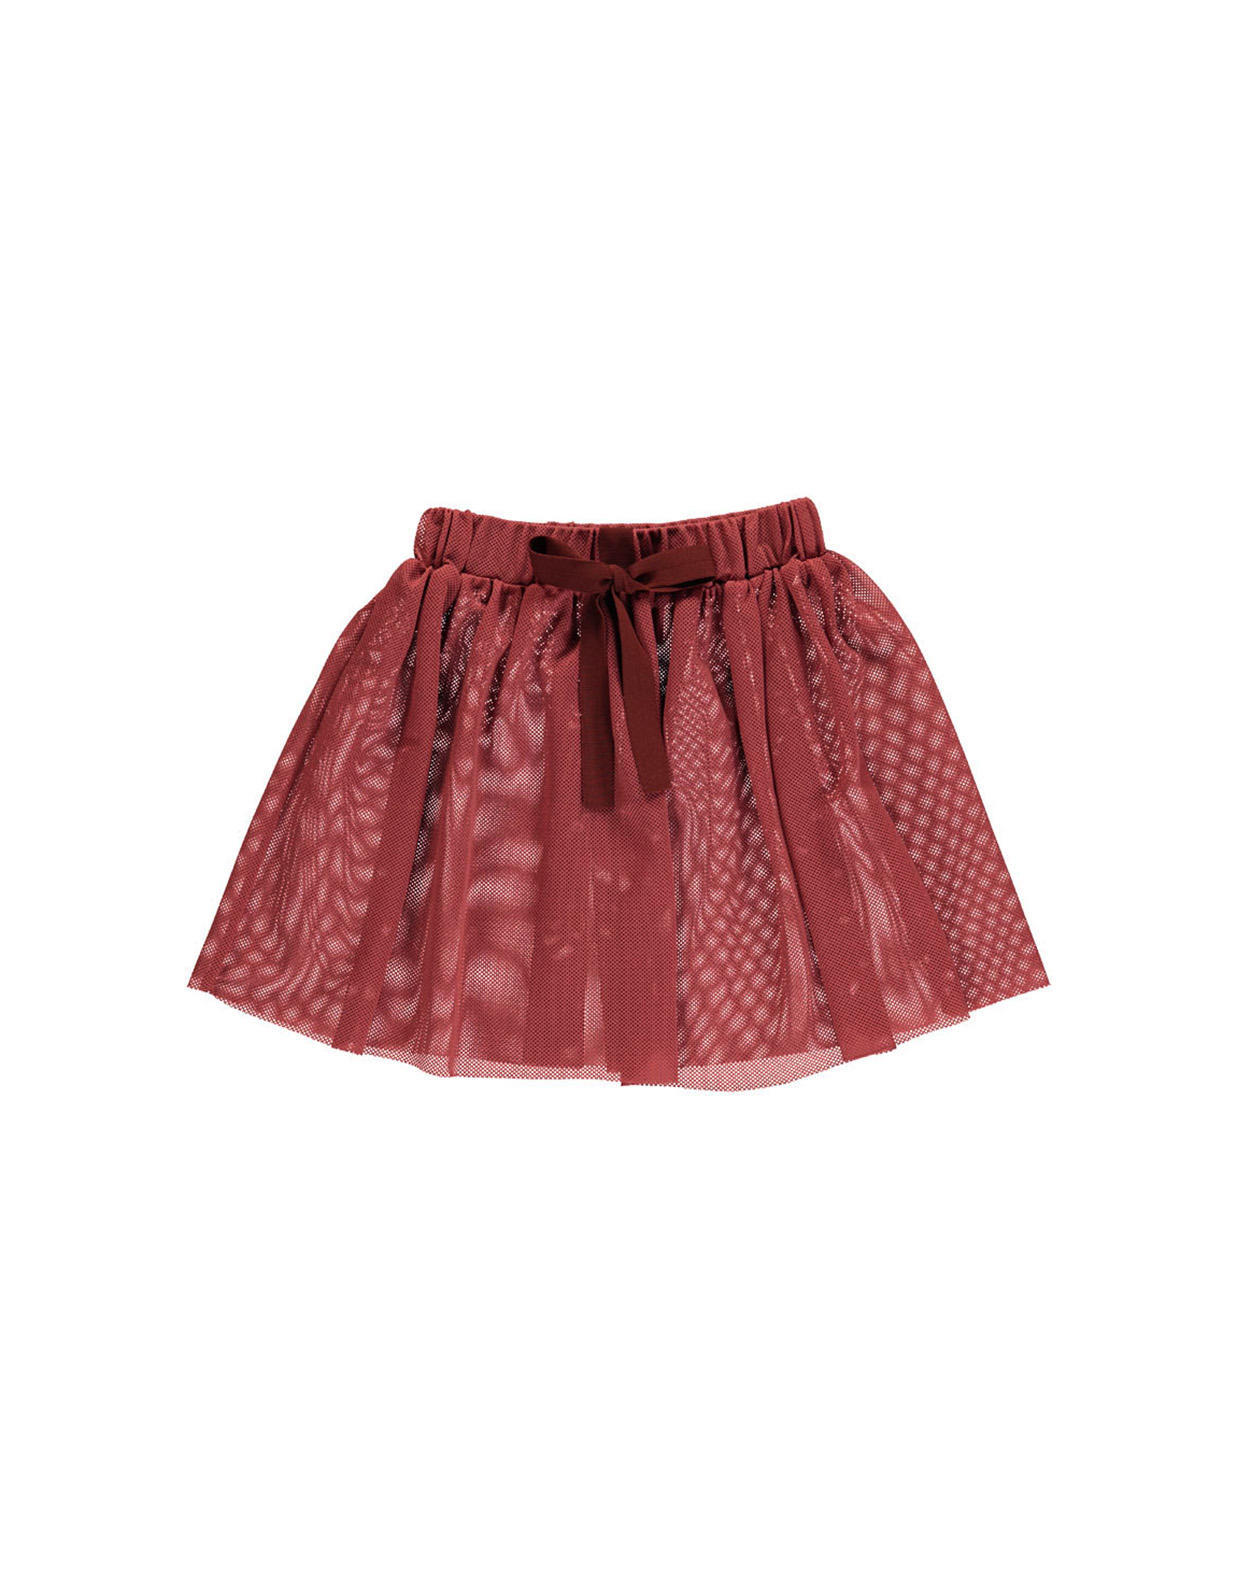 fabric net skirt